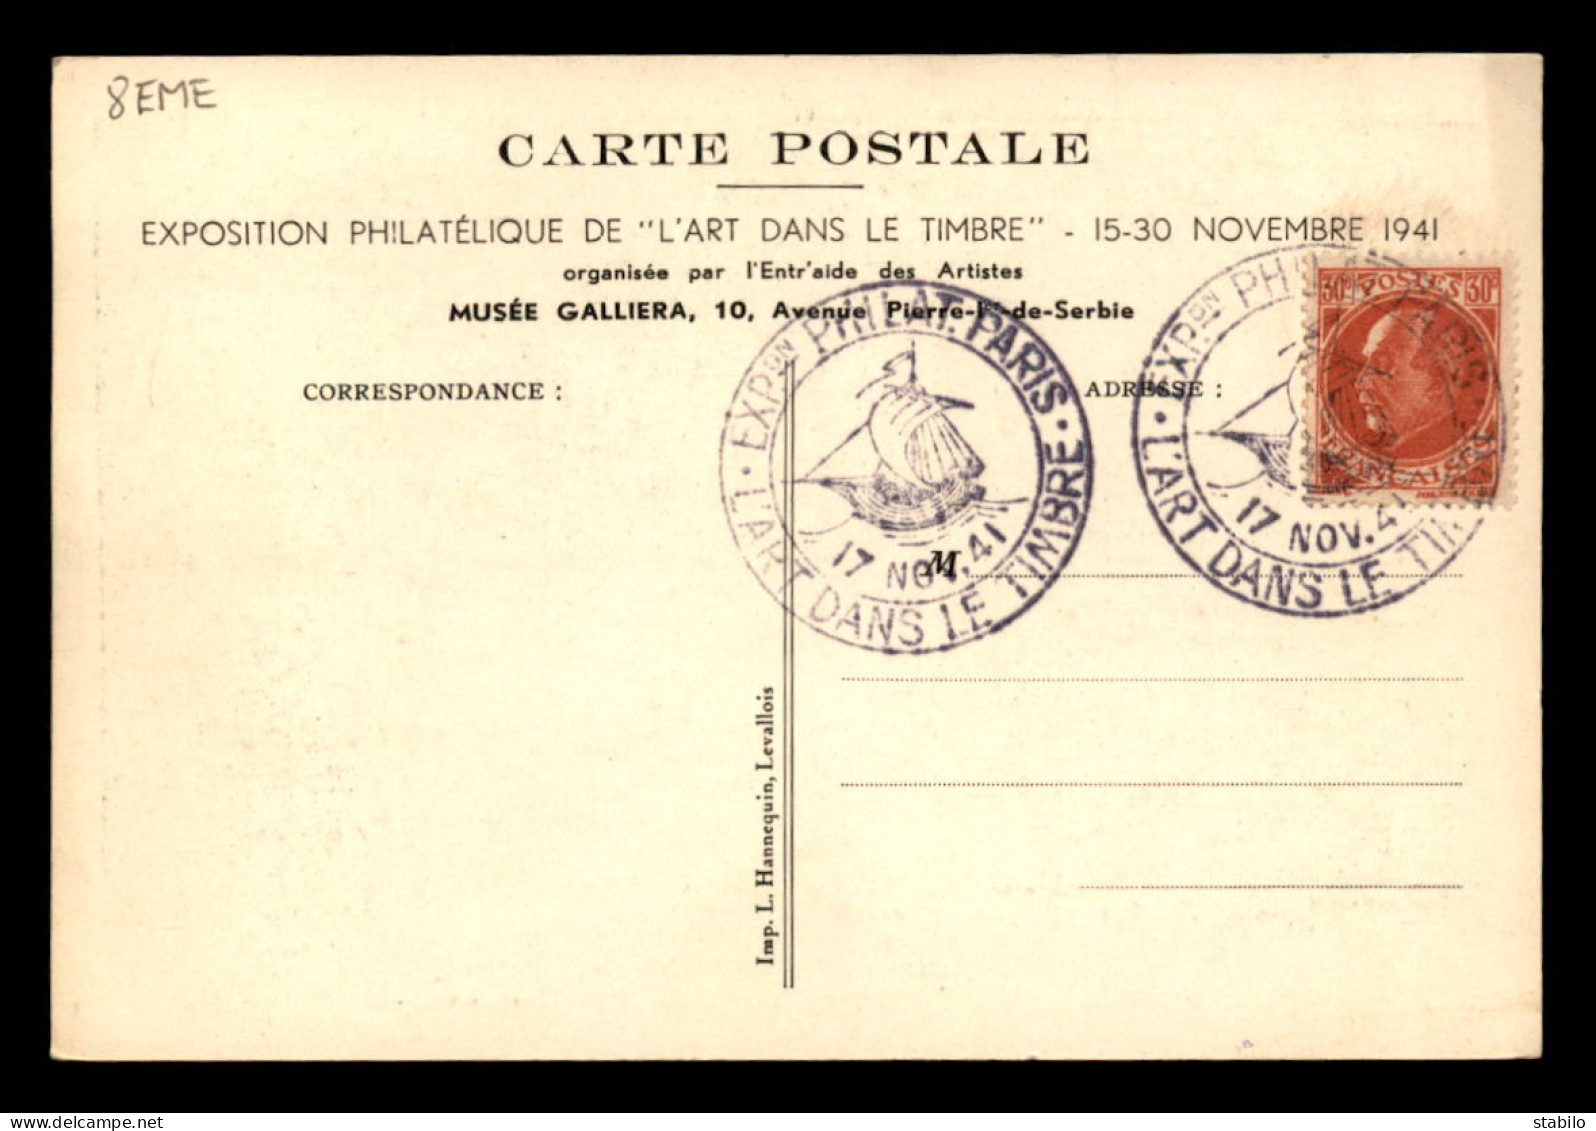 75 - PARIS 8EME - EXPOSITION PHILATELIQUE 15-30 NOVEMBRE 1941 - GRAVURE SUR BOIS D'EMILE BOIZOT, DESSIN DE P.E. LECOMTE - Distrito: 08